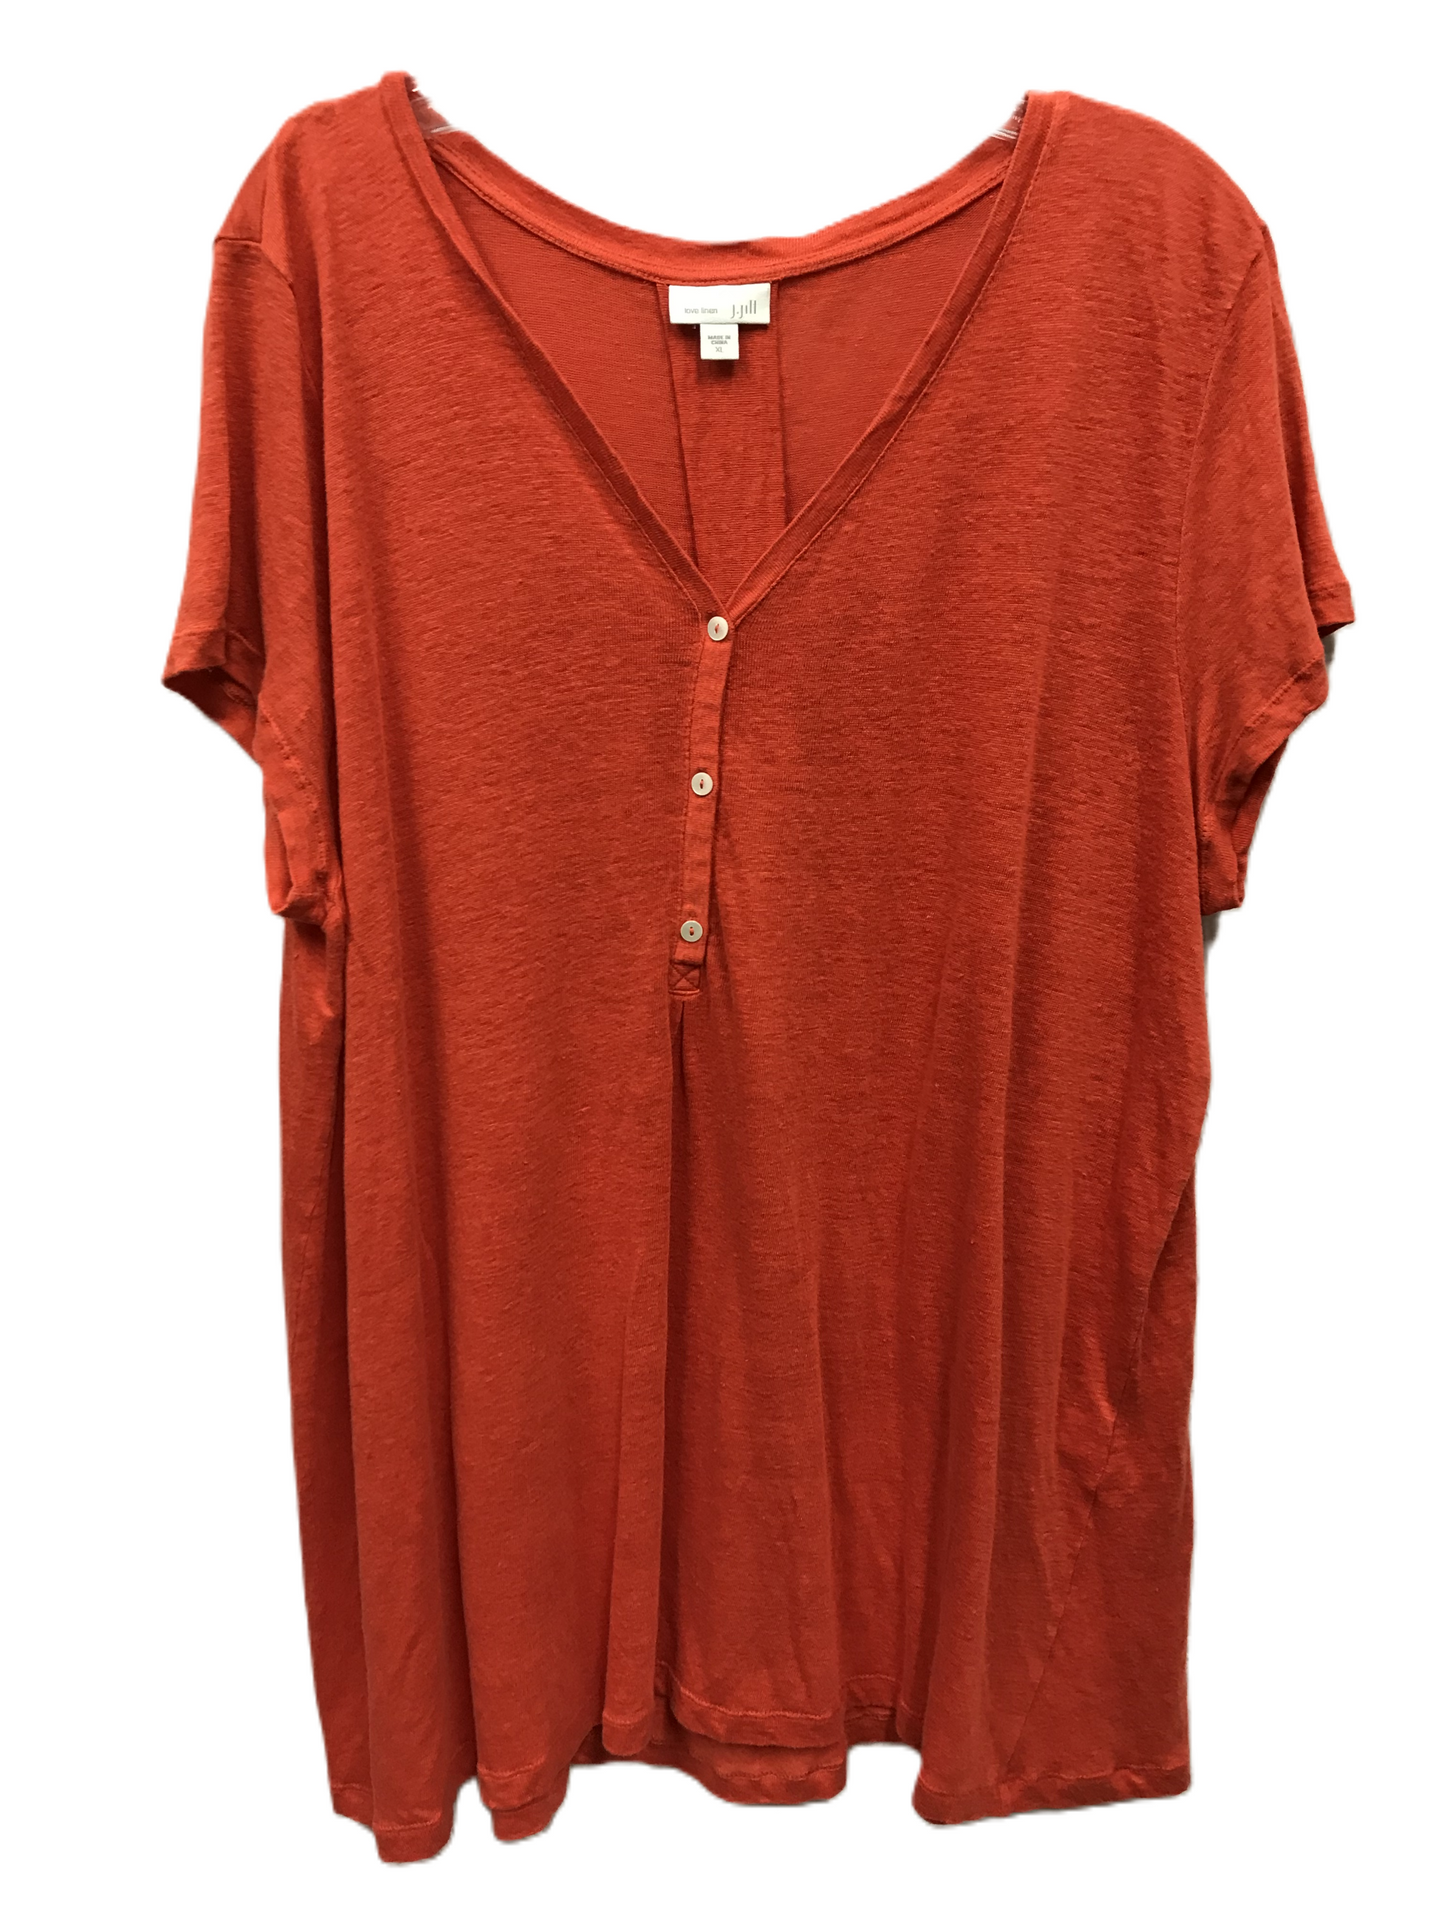 Orange Top Short Sleeve By J. Jill, Size: Xl